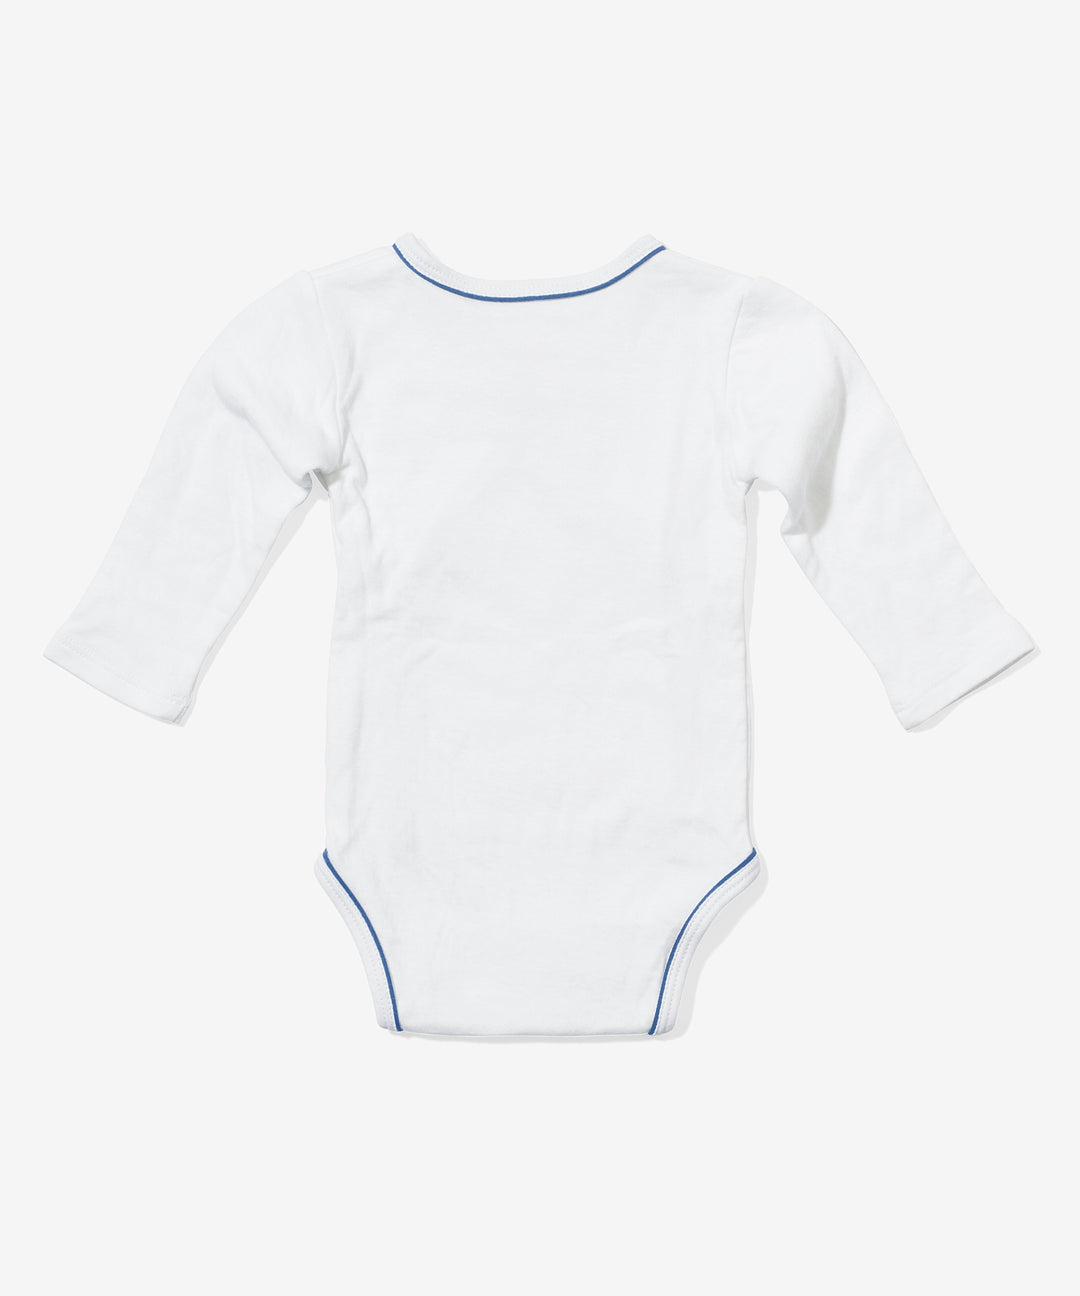 Baby Boy Blue Bundle Outfit | Oso & Me